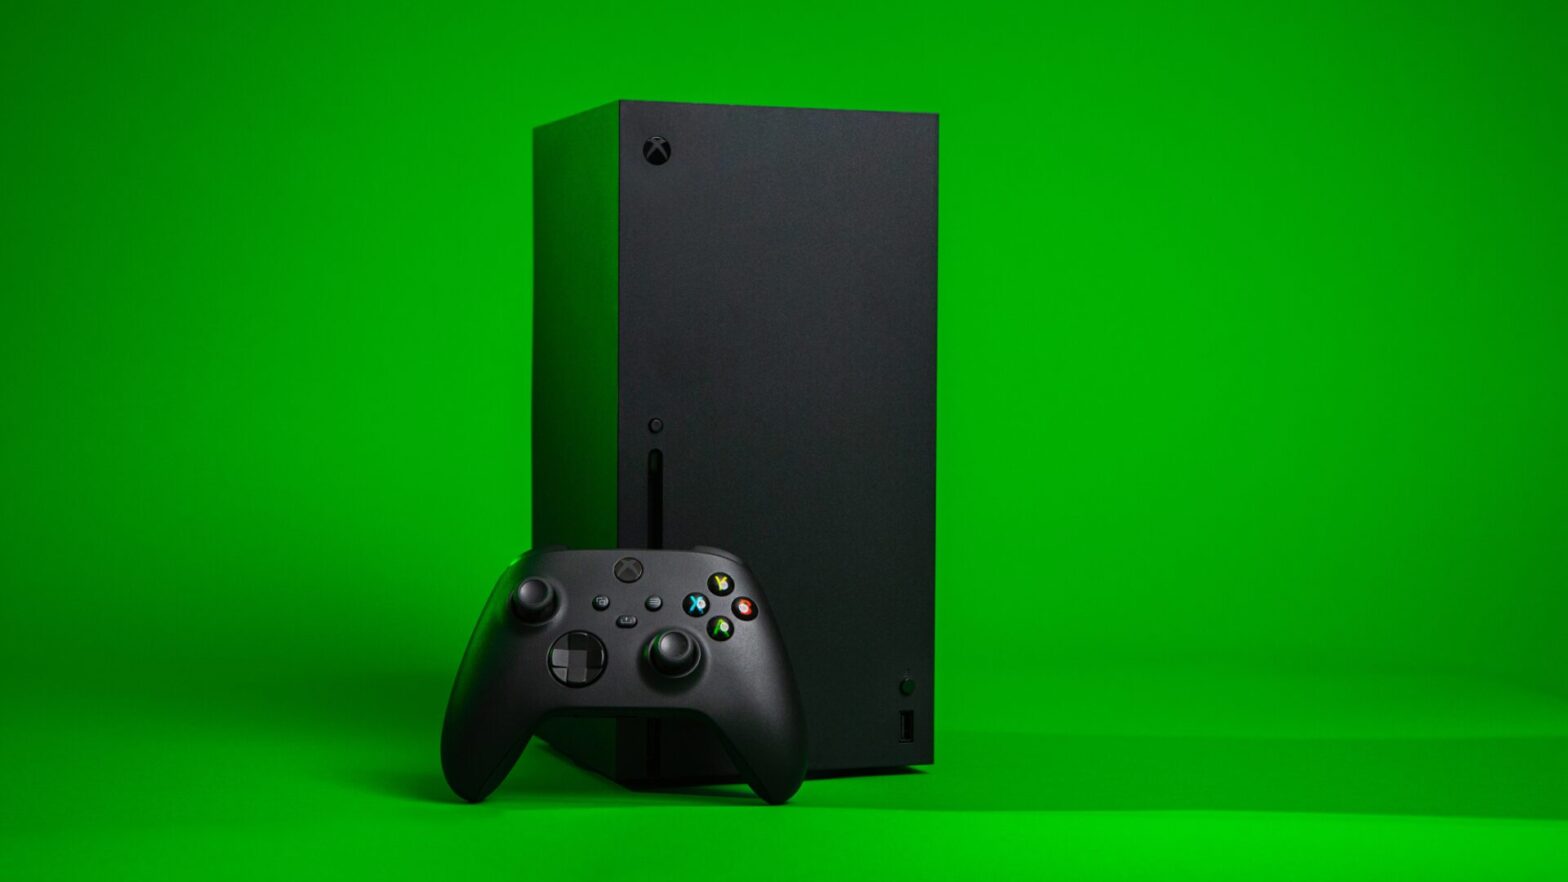 Longtemps en rupture de stock, la Xbox Series X est aujourd'hui disponible